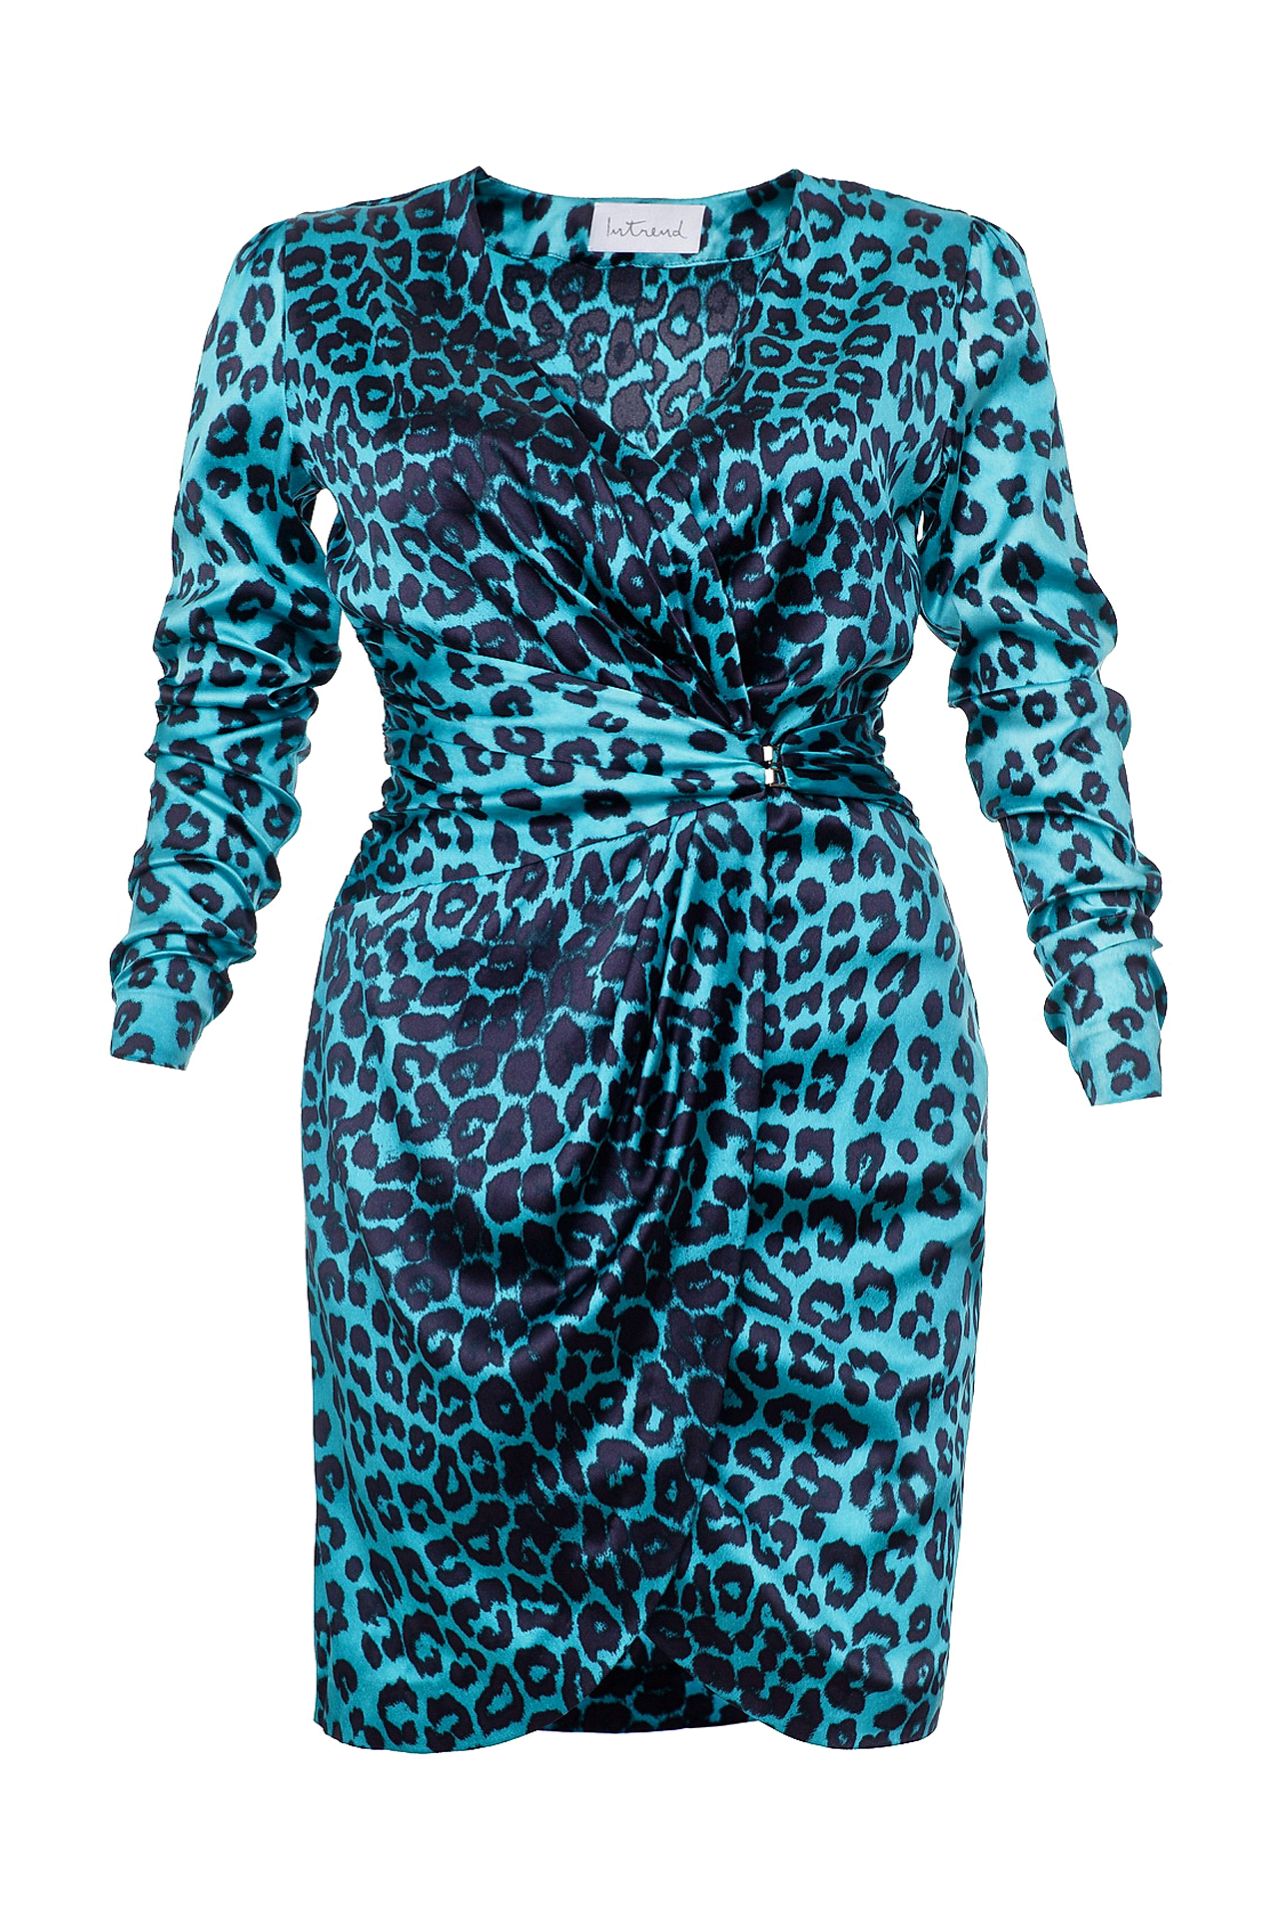 Платье леопард с синим